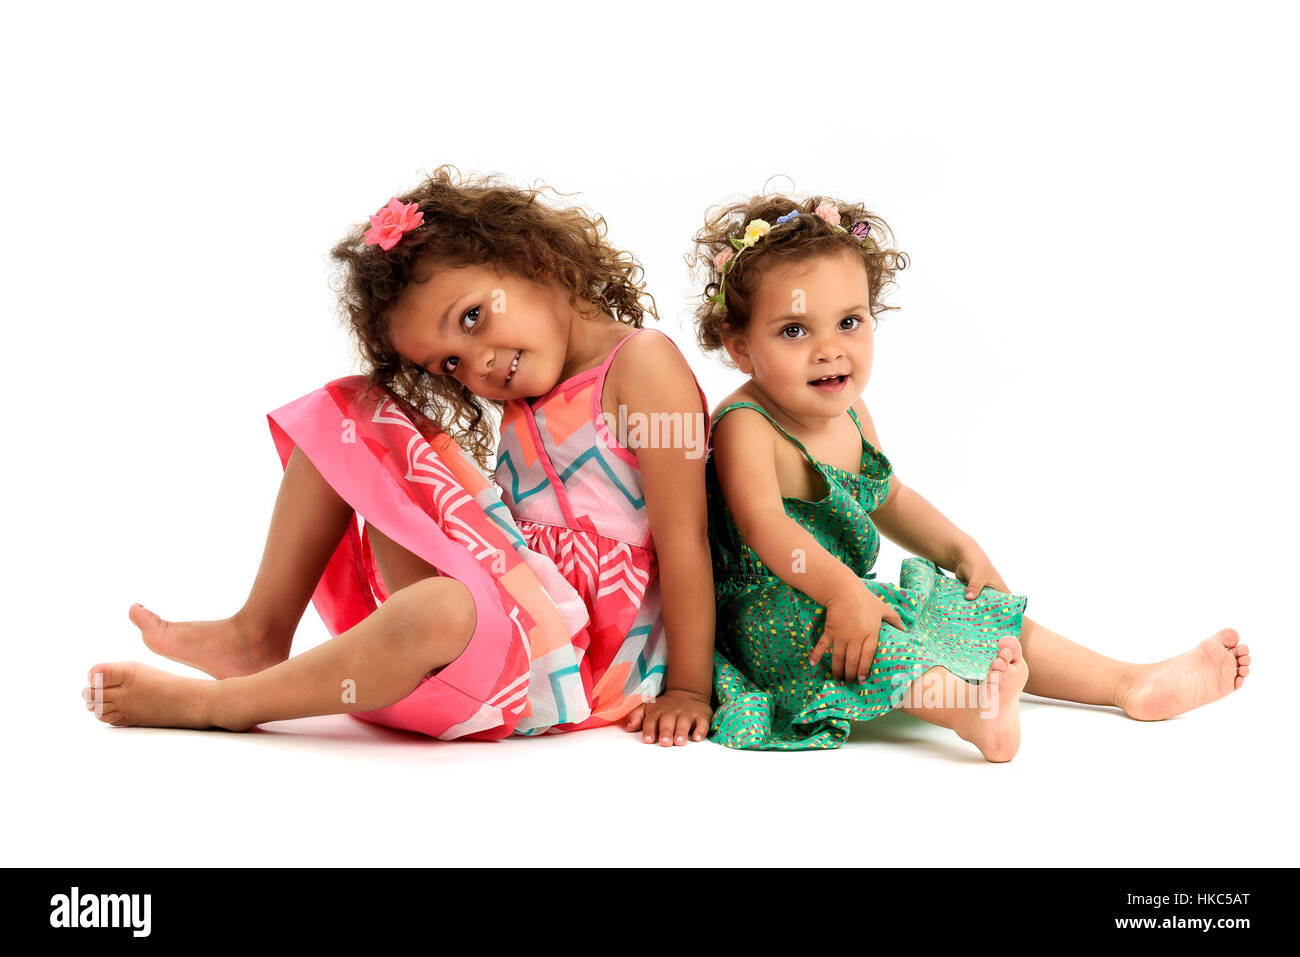 Mulatte Schwestern sitzen Rücken an Rücken zu spielen. Mädchen in roten und grünen Kleid spielen, lächelnd und zeigt Schwester Liebe und Glück. Eine Mädchen ist m Stockfoto